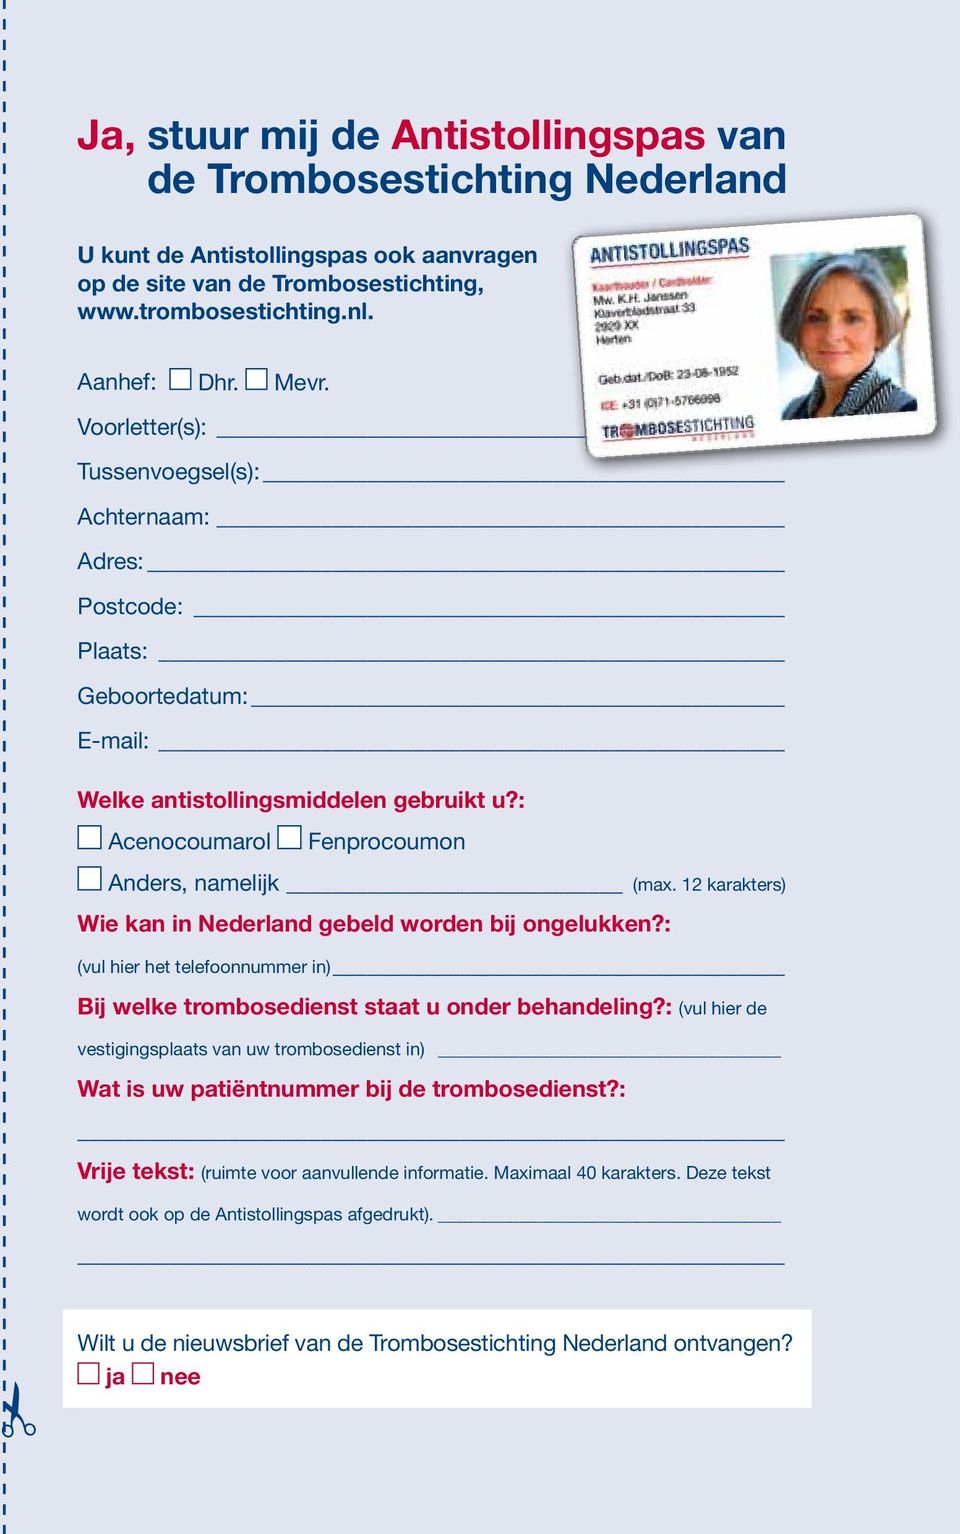 12 karakters) Wie kan in Nederland gebeld worden bij ongelukken?: (vul hier het telefoonnummer in) Bij welke trombosedienst staat u onder behandeling?